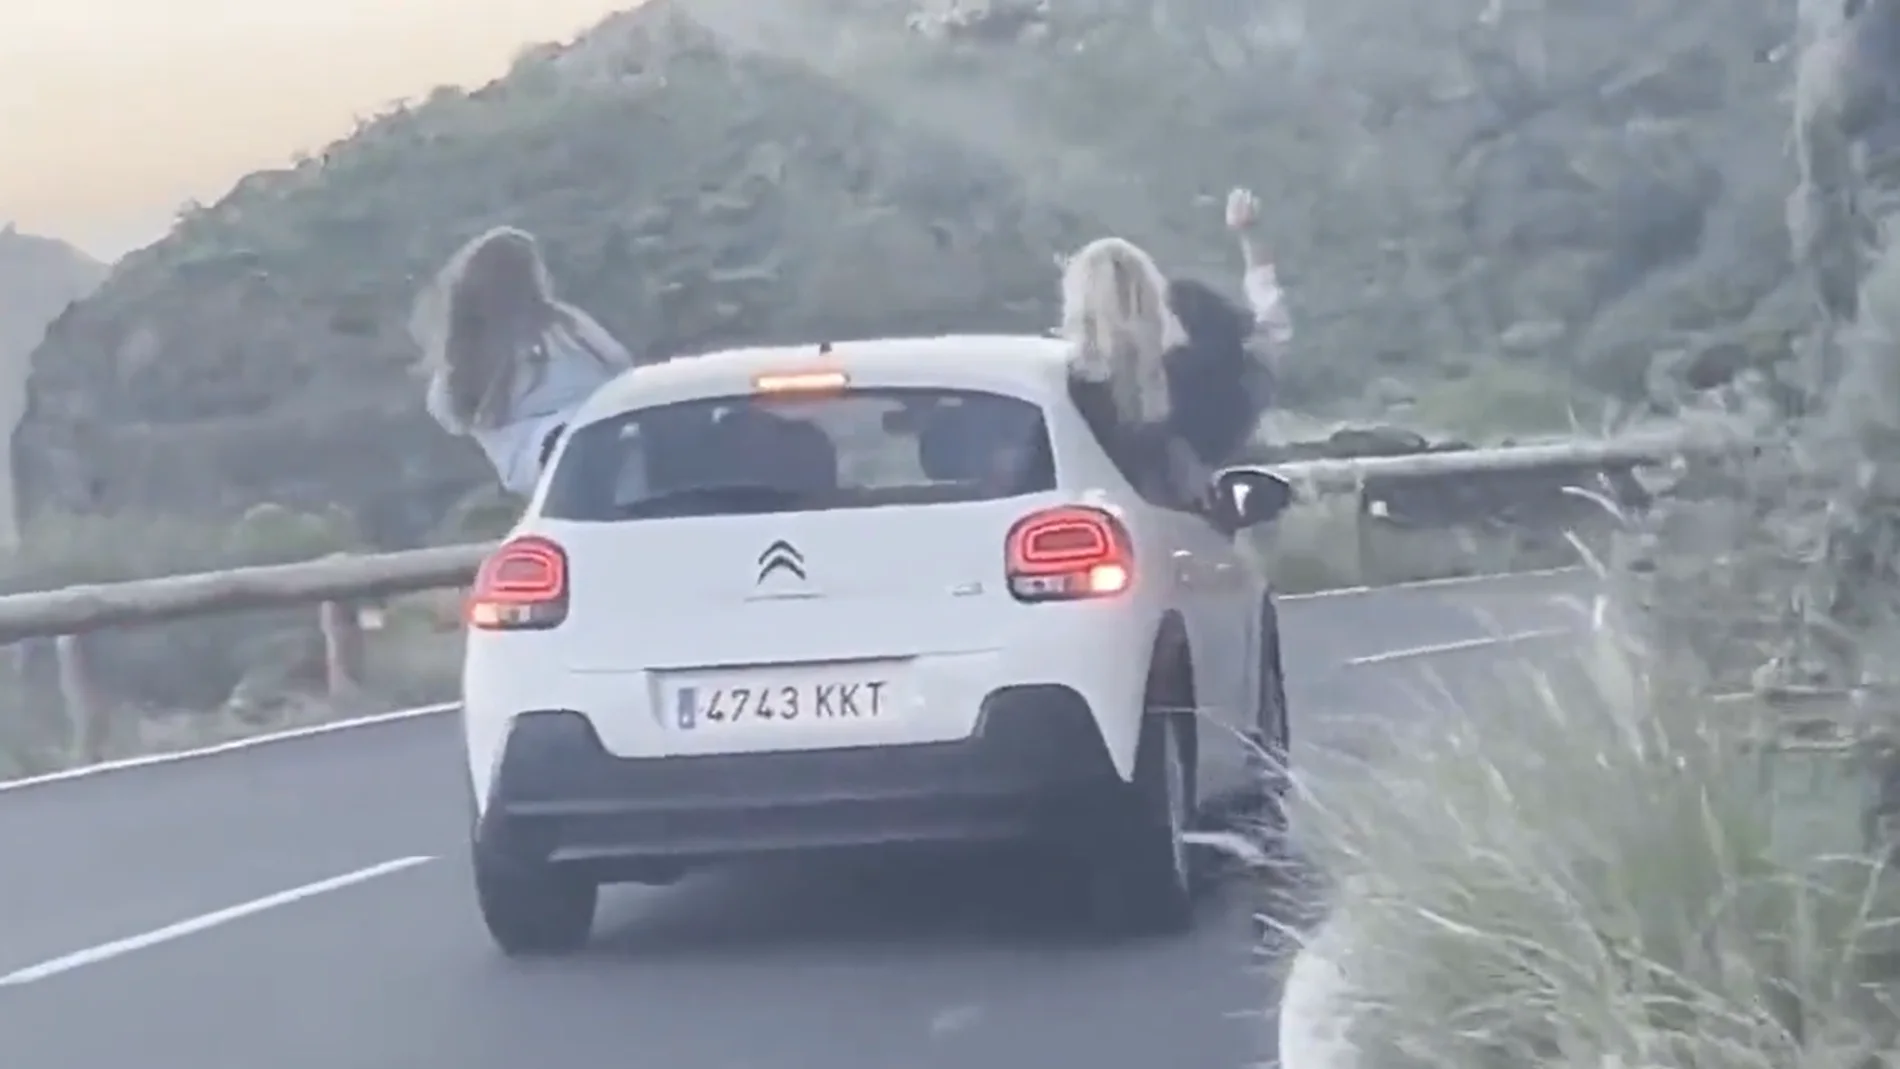 Tres jóvenes arriesgan su vida al circular por una carretera con medio cuerpo fuera del coche